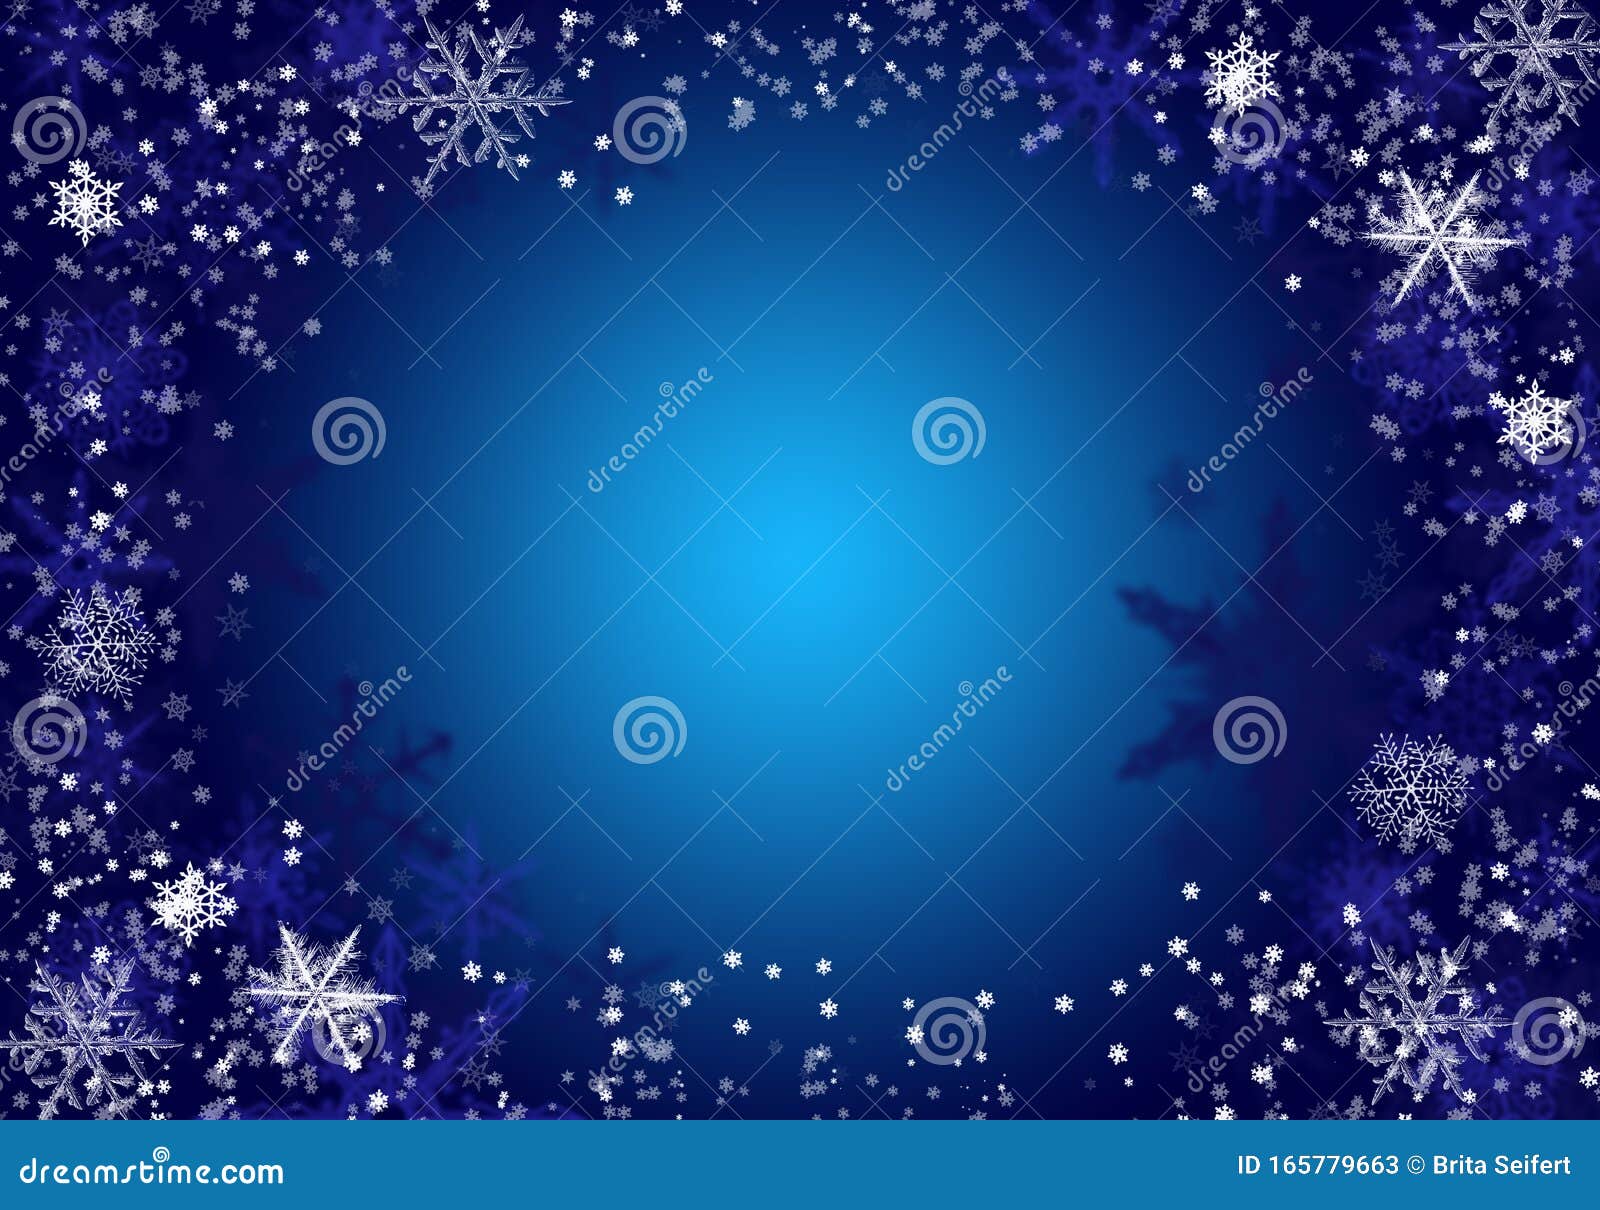 雪背景蓝色散焦的圣诞雪雪降冬概念假日纹理与白色库存例证 插画包括有雪背景蓝色 雪降冬概念